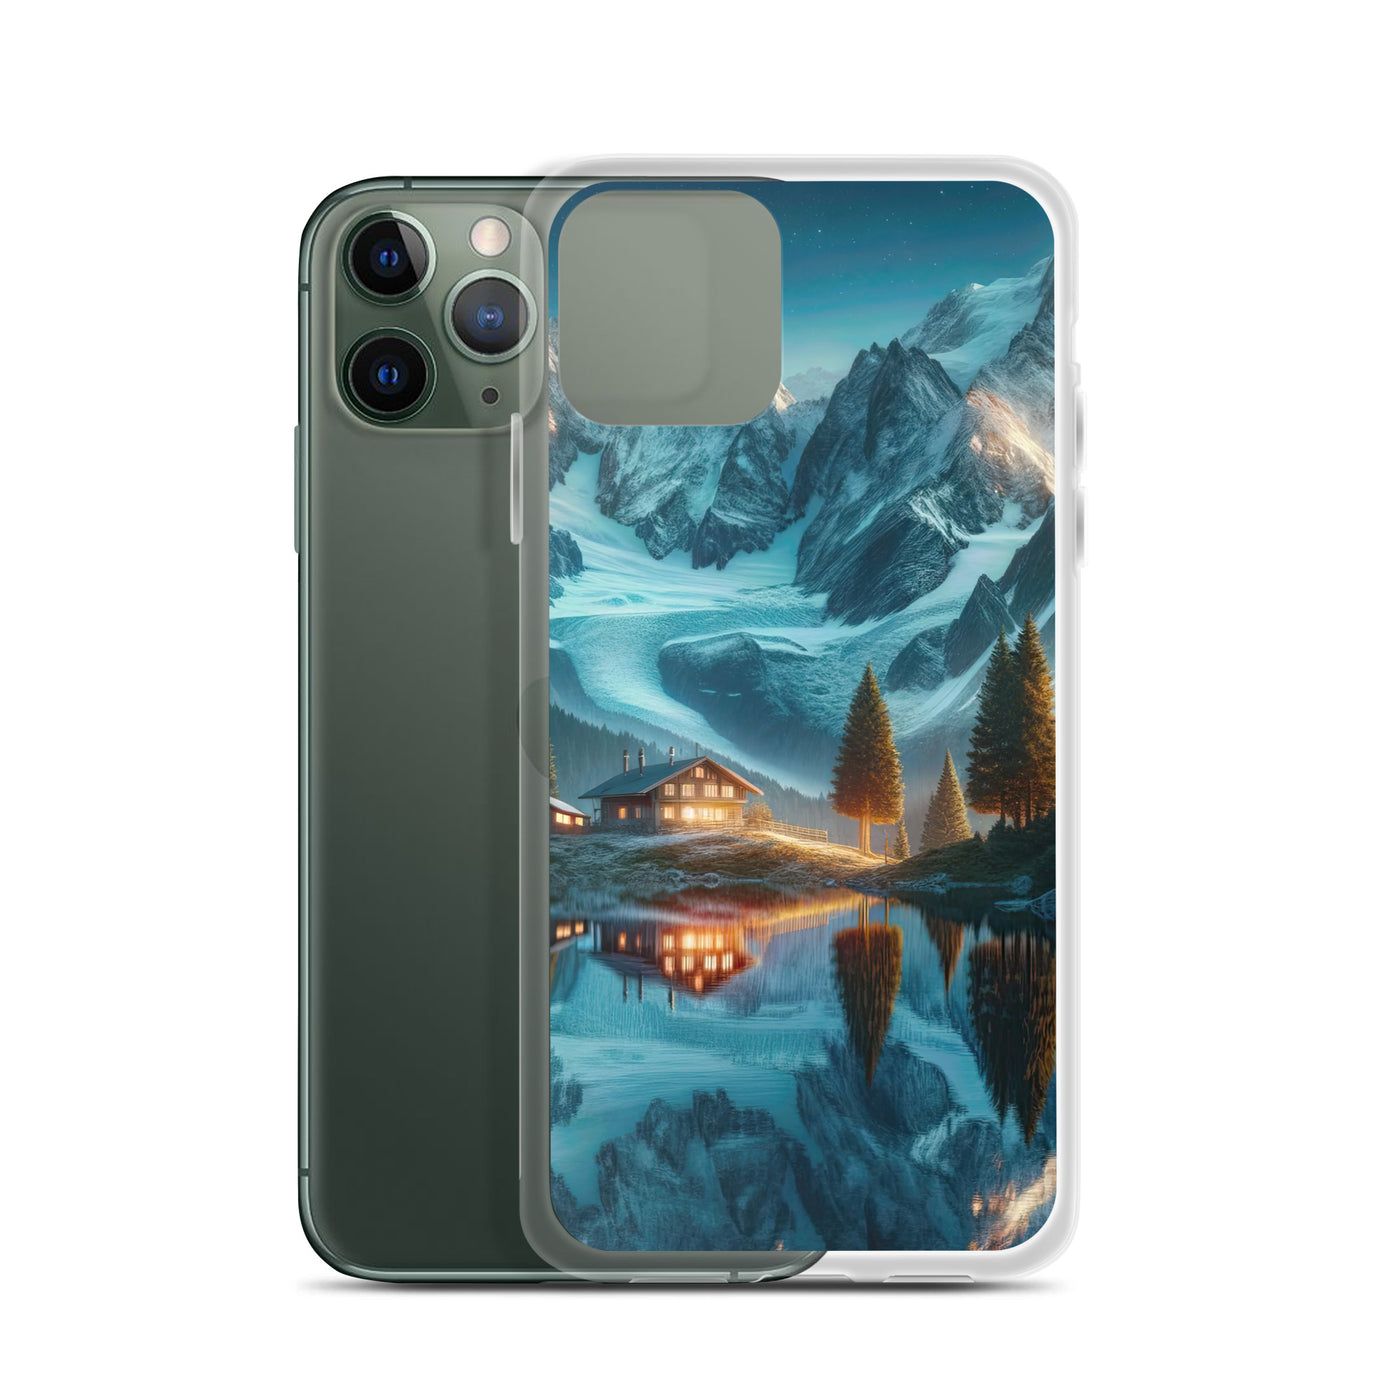 Stille Alpenmajestätik: Digitale Kunst mit Schnee und Bergsee-Spiegelung - iPhone Schutzhülle (durchsichtig) berge xxx yyy zzz